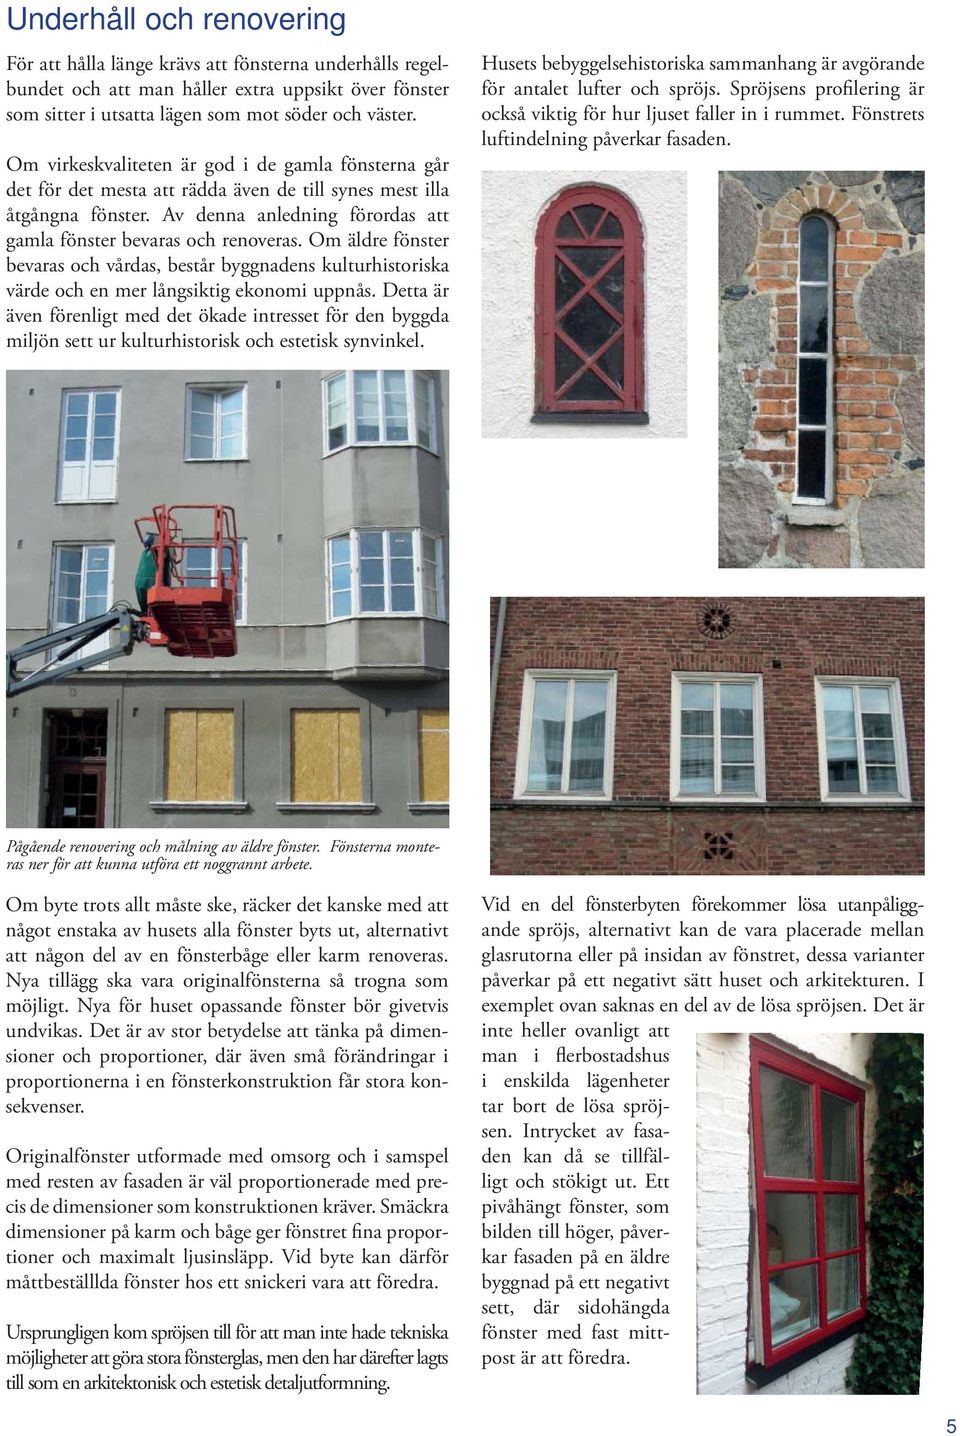 Om äldre fönster bevaras och vårdas, består byggnadens kulturhistoriska värde och en mer långsiktig ekonomi uppnås.